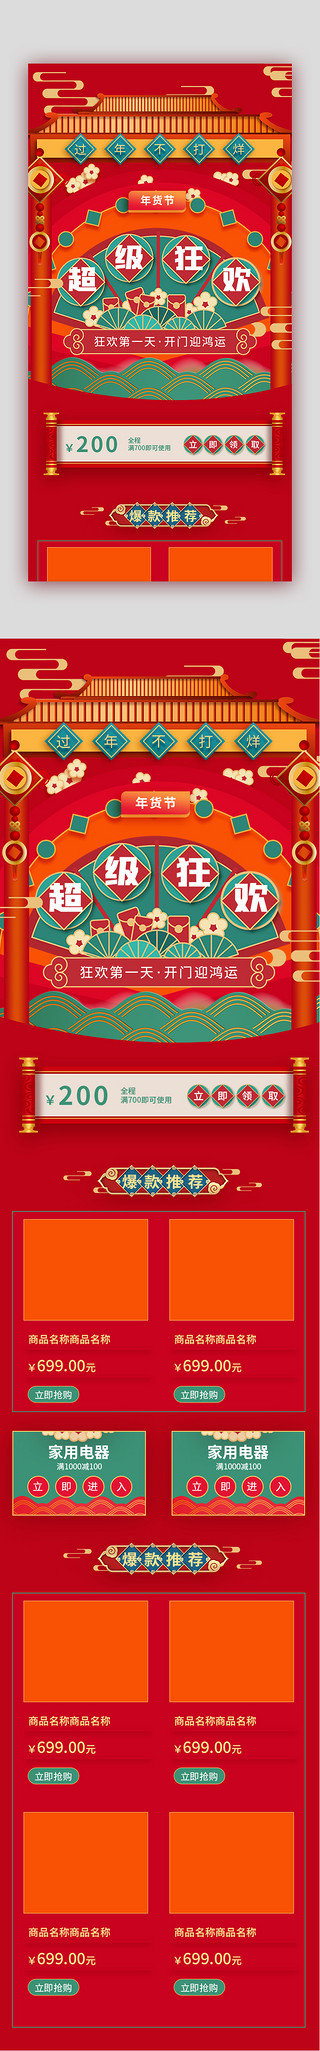 过年碗筷UI设计素材_过年不打烊超级狂欢年货节